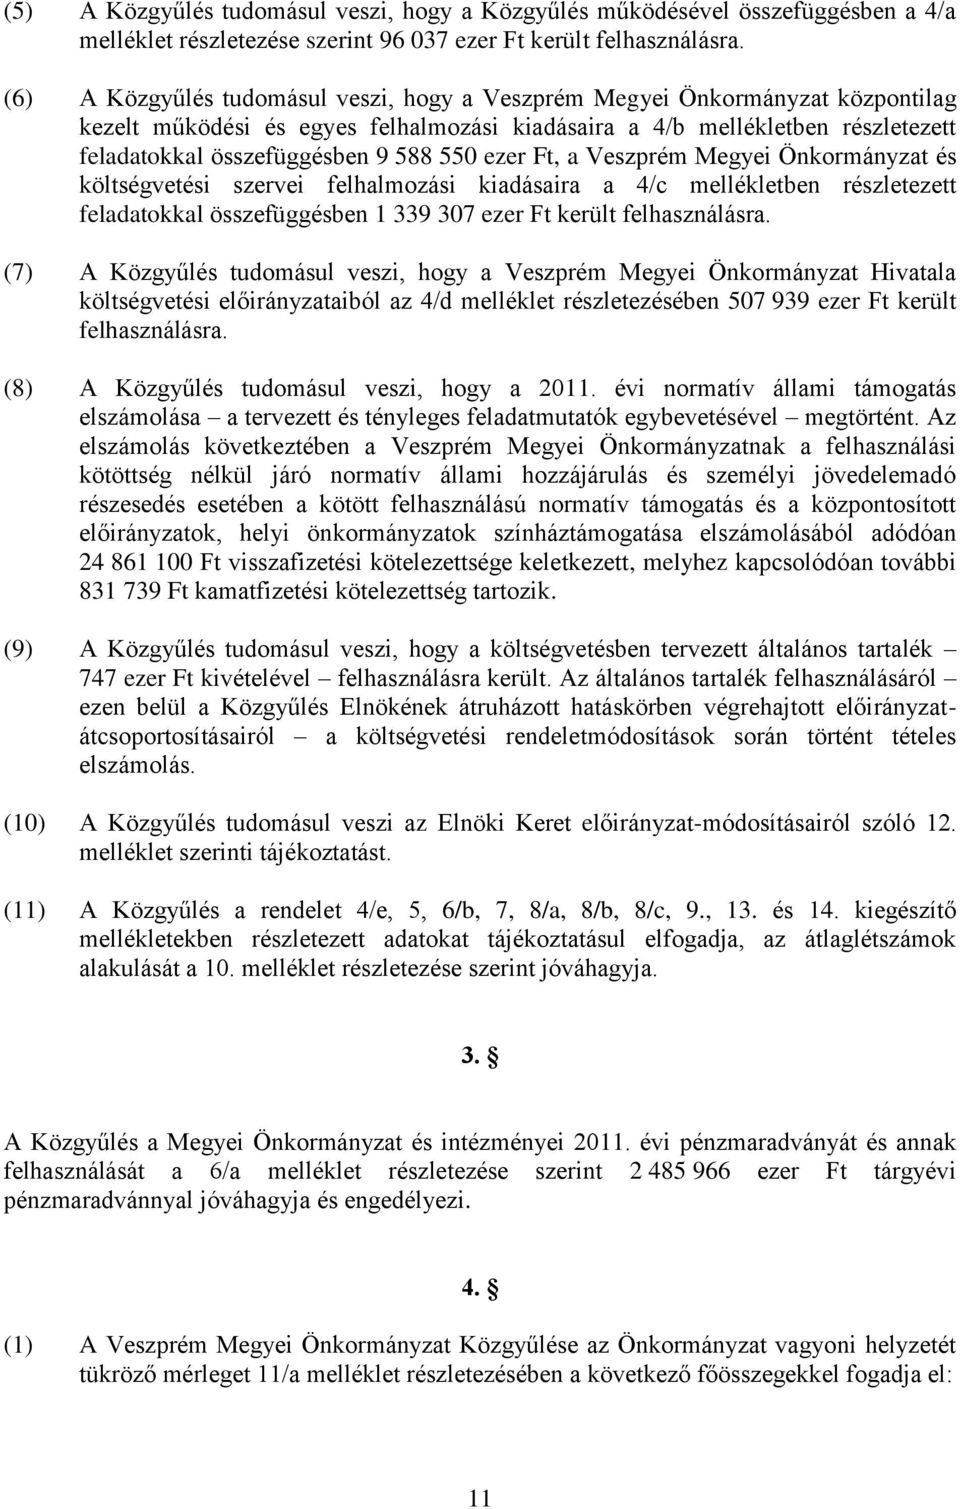 ezer Ft, a Veszprém Megyei Önkormányzat és költségvetési szervei felhalmozási kiadásaira a 4/c mellékletben részletezett feladatokkal összefüggésben 1 339 307 ezer Ft került felhasználásra.